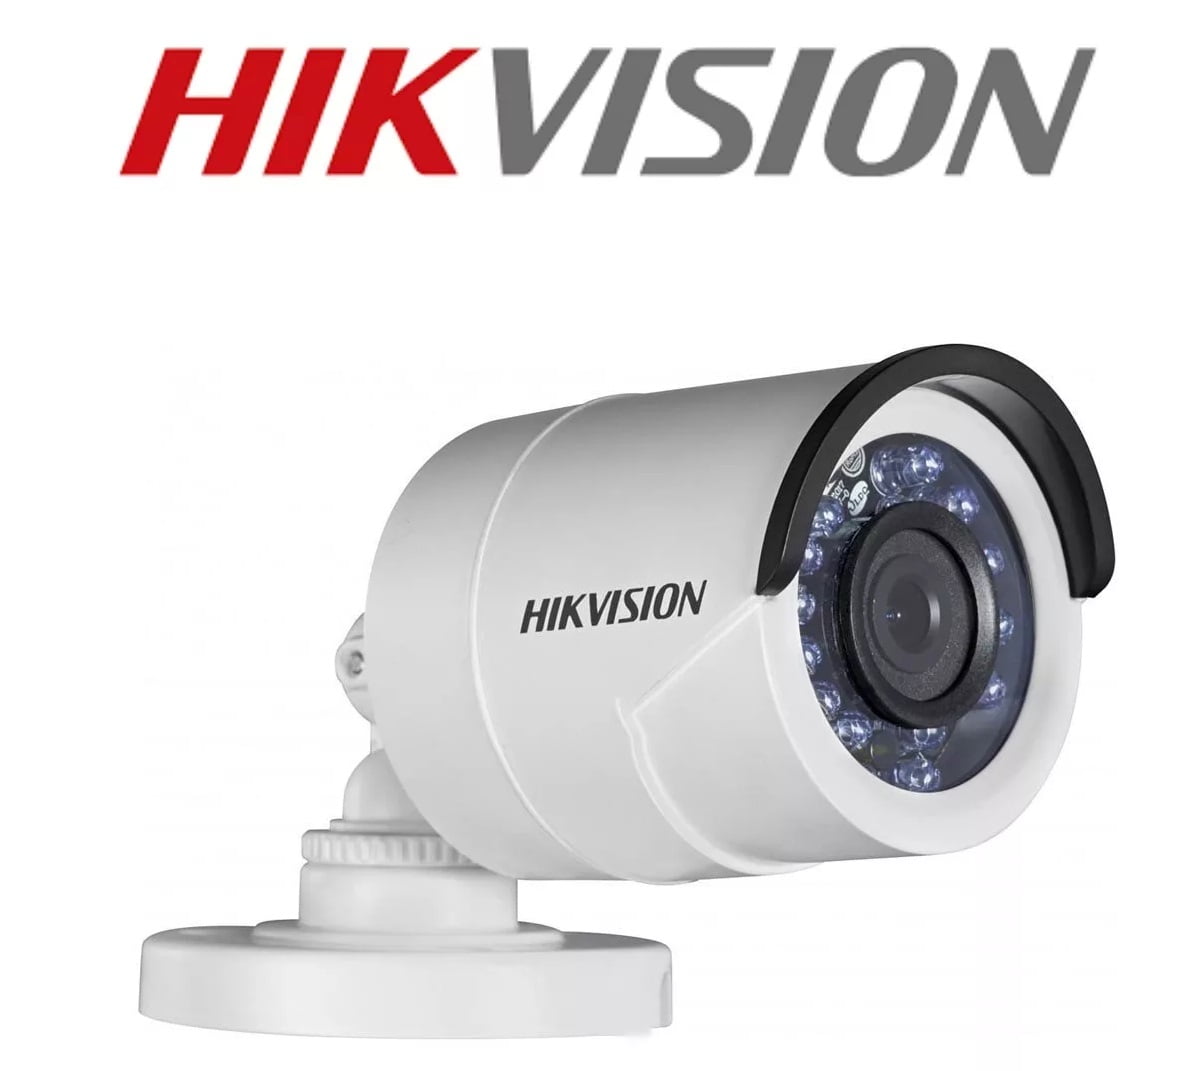 Câmera Hikvision Ds-2ce16c0t-ir de segurança infra vermelho bullet - 1 megapixel - lente 2,8mm - 2 em 1 TVI/CVBS